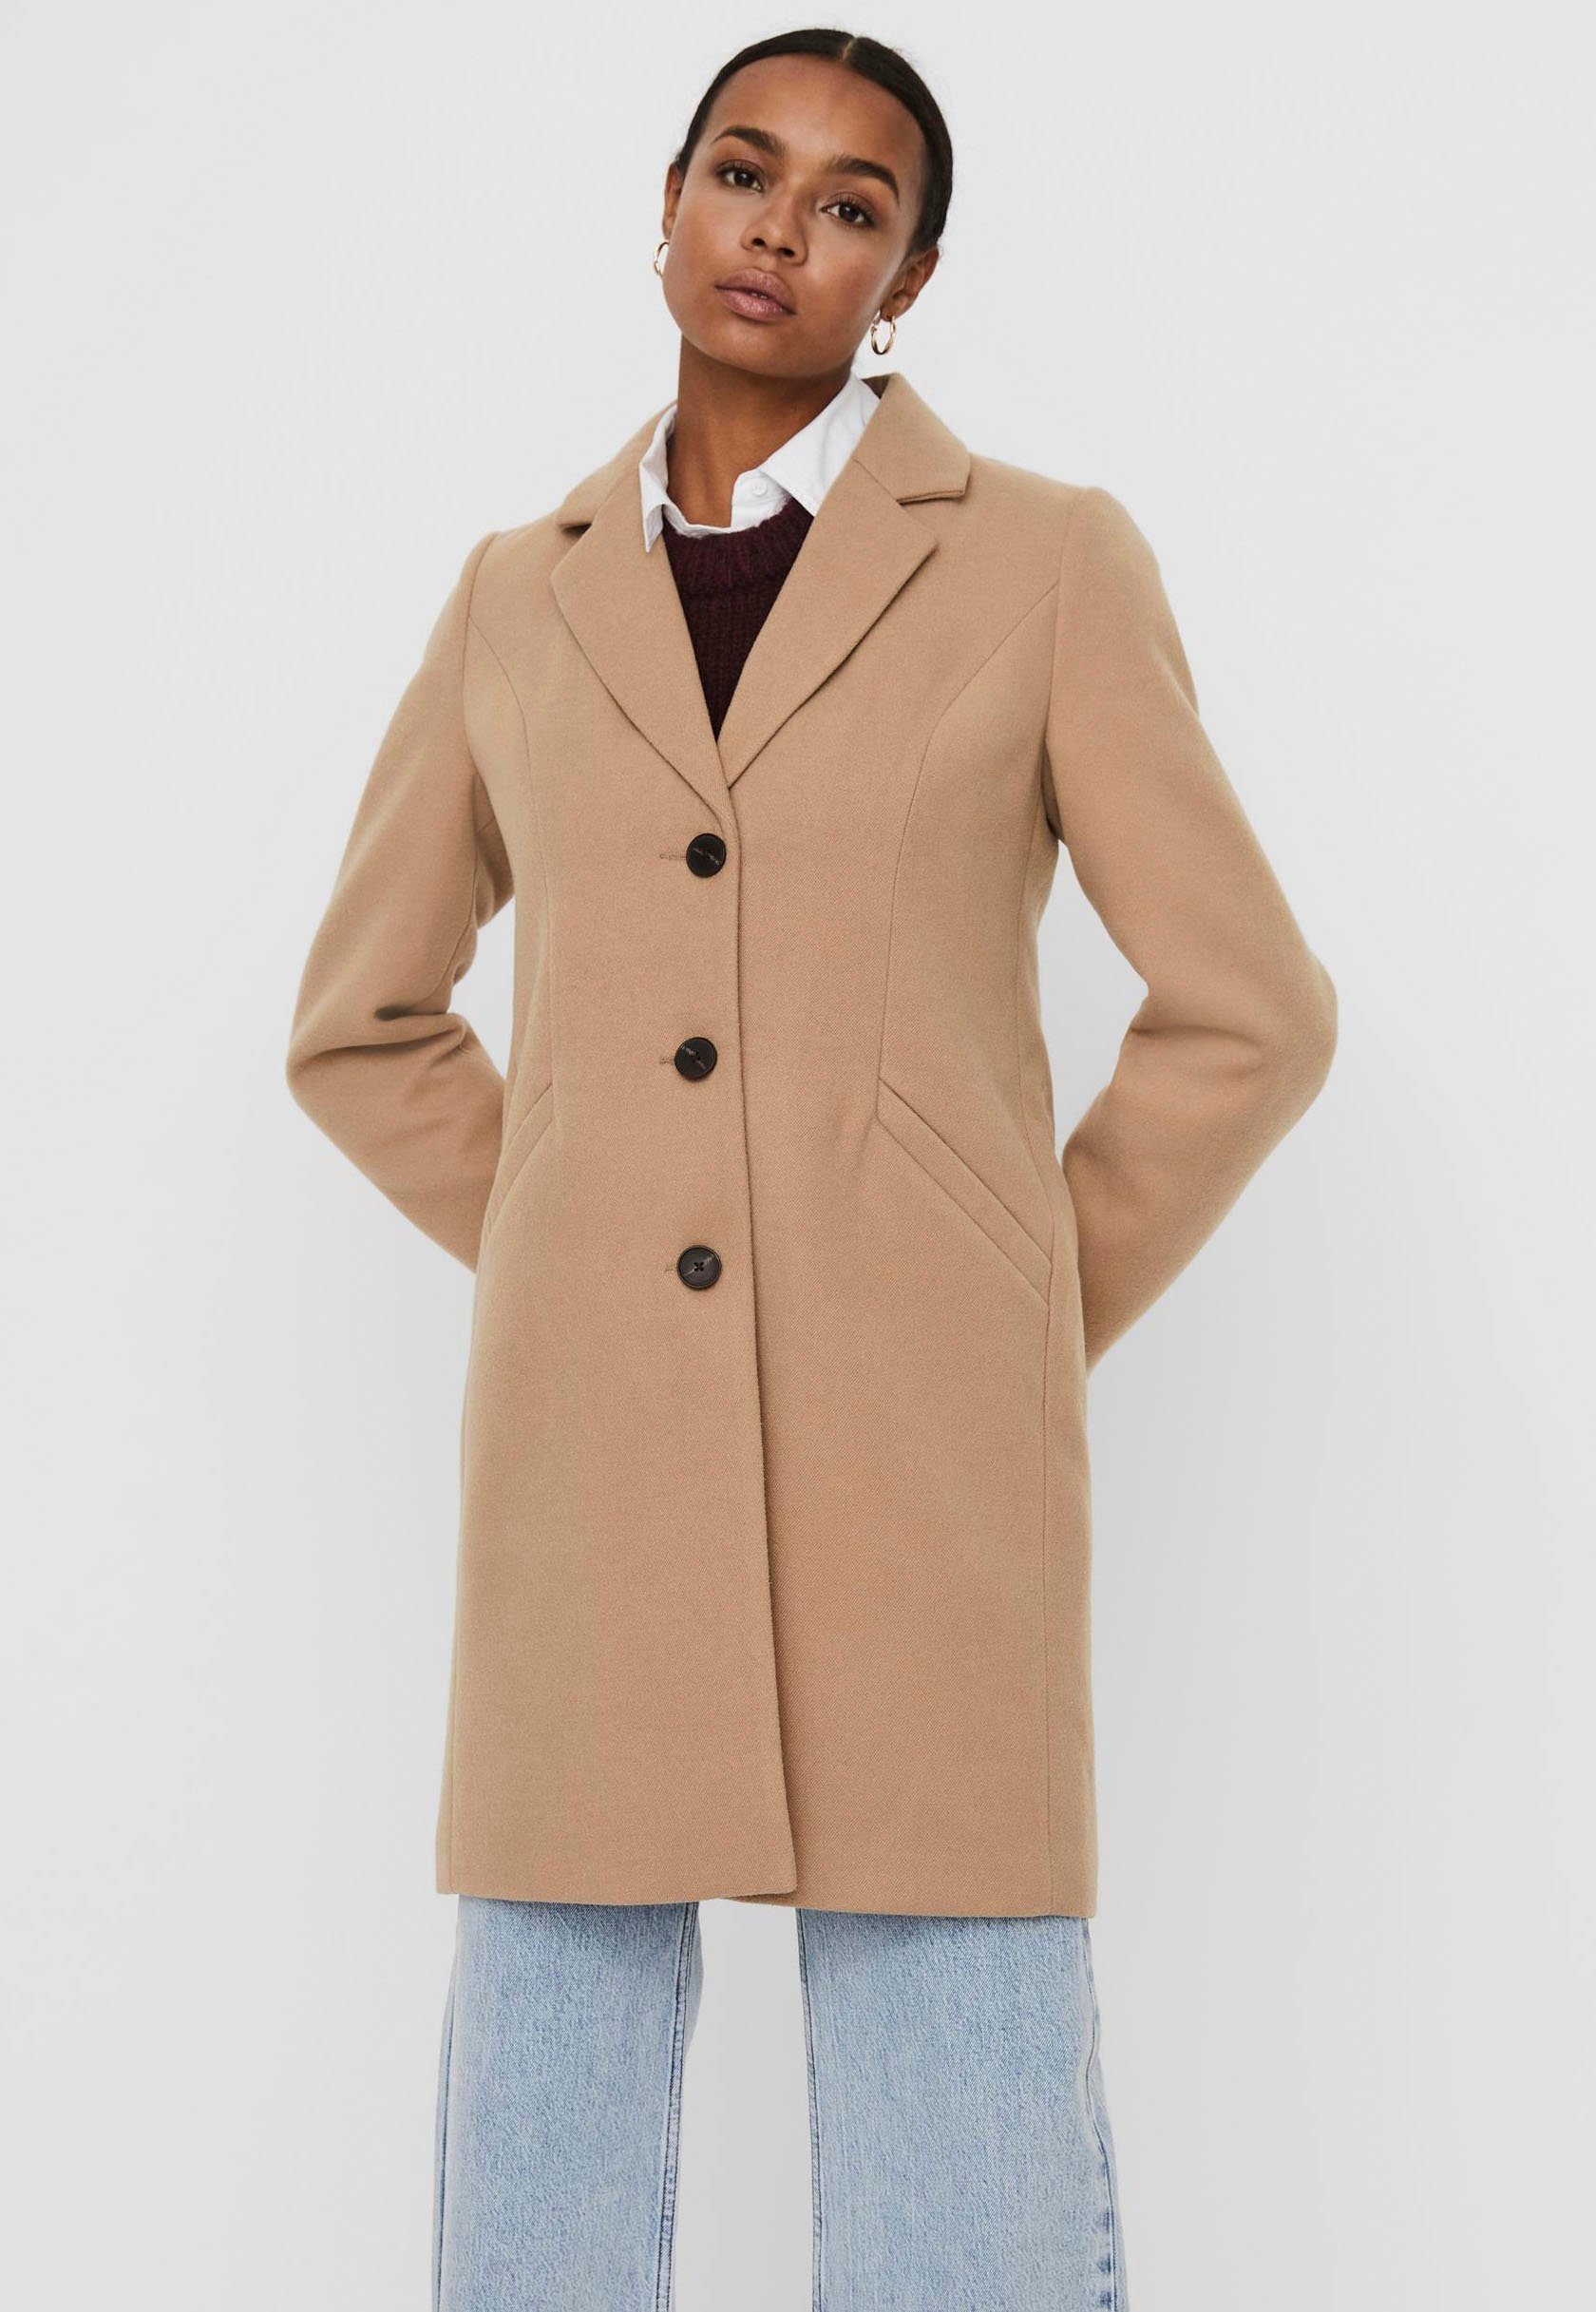 Mantel in braun online kaufen | OTTO